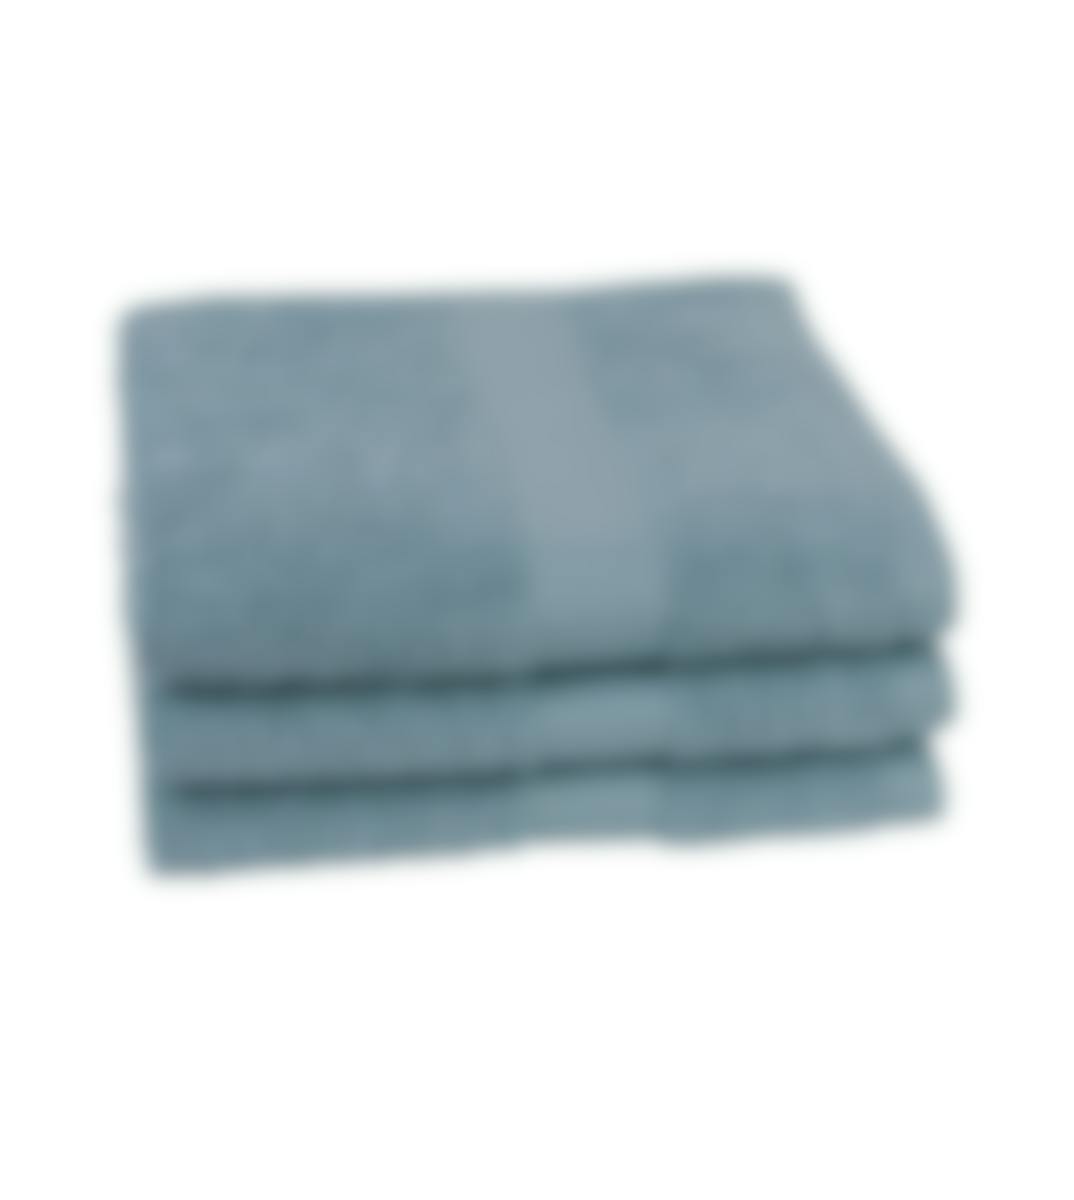 Jules Clarysse handdoek Talis powder blue 50 x 100 cm set van 3